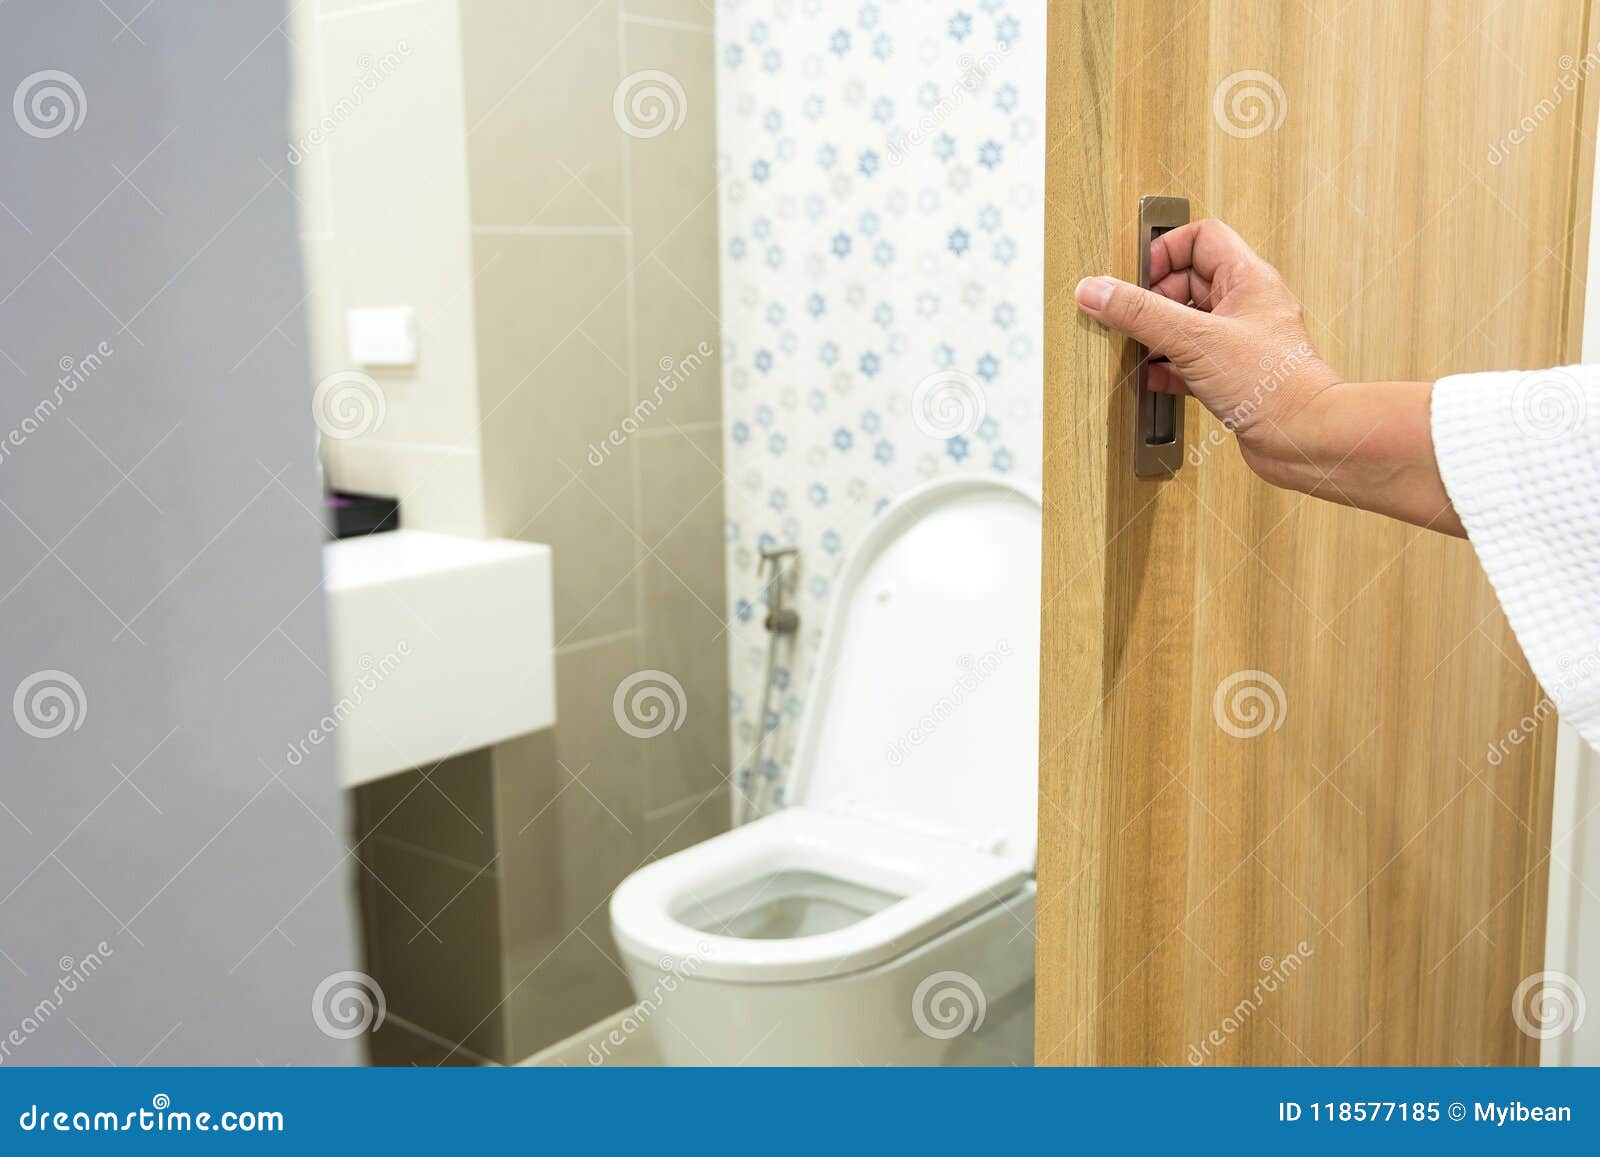 Сестра забыла закрыться в ванной. Дверь в туалет. Открытая дверь в туалет. Приоткрытая дверь в туалет. Открытая дверь в ванную.